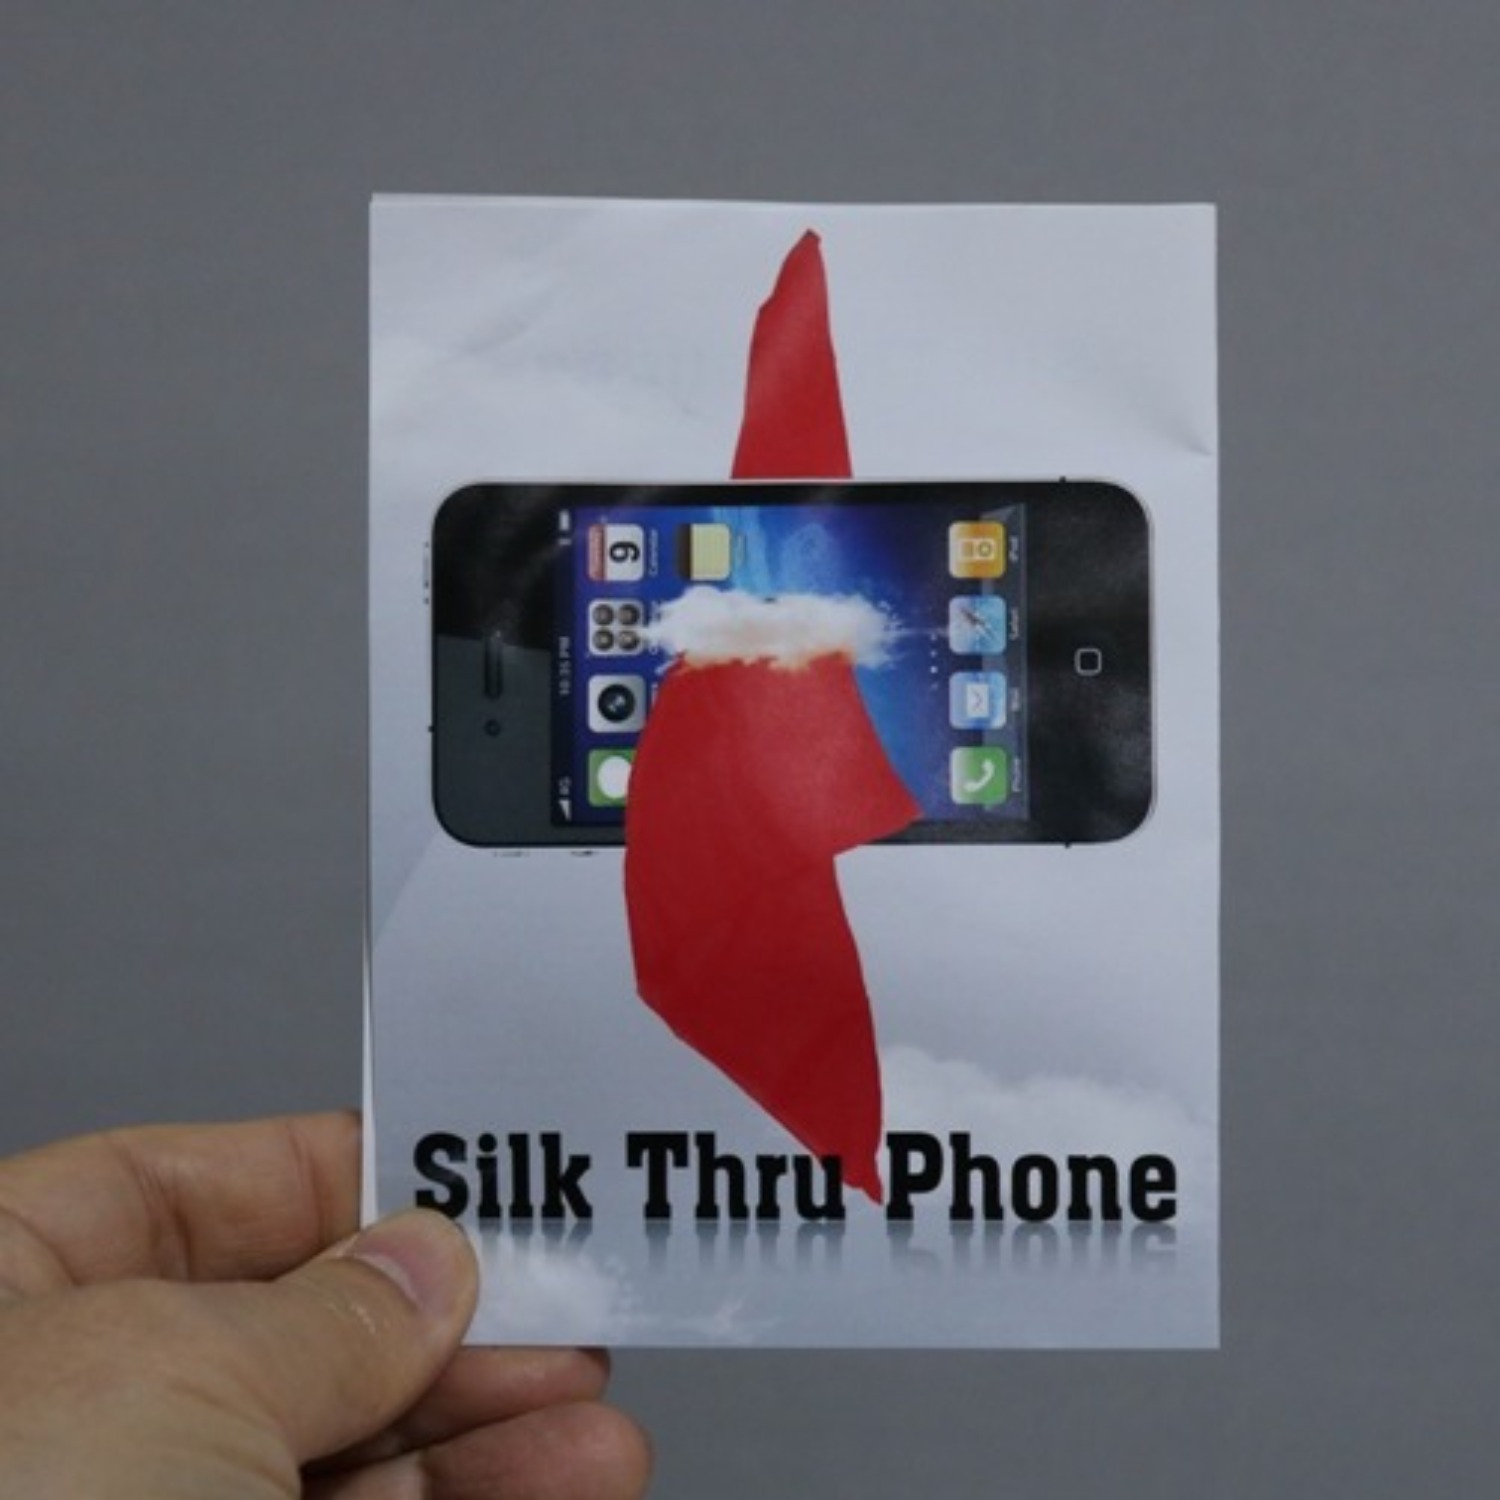 [실크쓰루폰] Silk Through Phone (12인치 실크) 스카프가 핸드폰을 통과하는 클로즈업 마술도구 입니다.